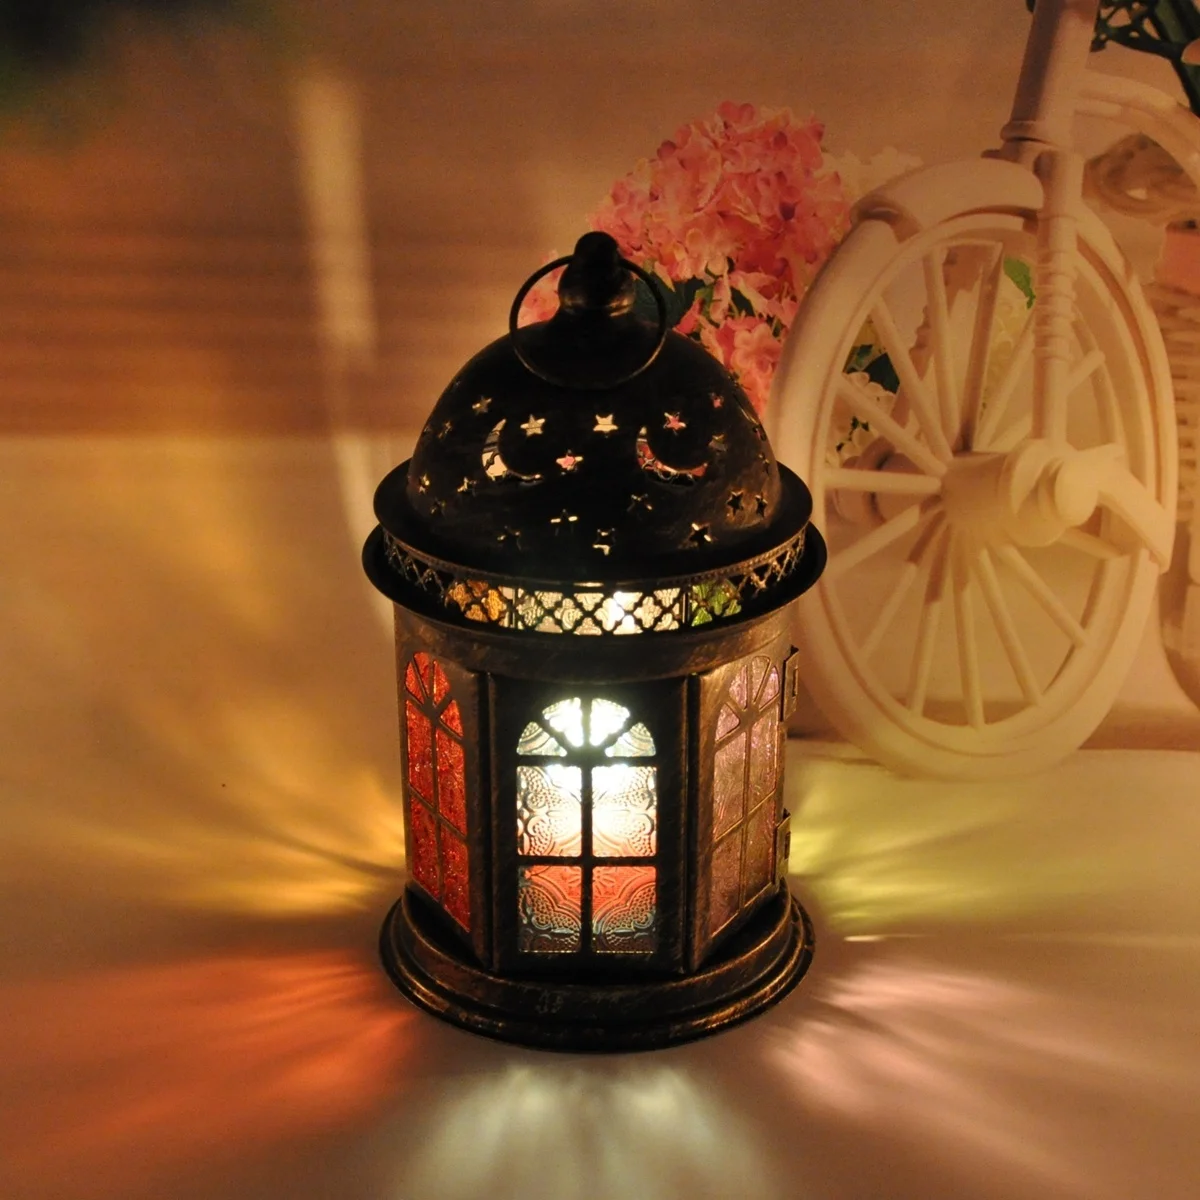 

Vintage Candle Holder Lanterns Metal Patterned Glass Hanging Decorative Lantern Candleholder Home Decor Indoor Outdoor Weddings